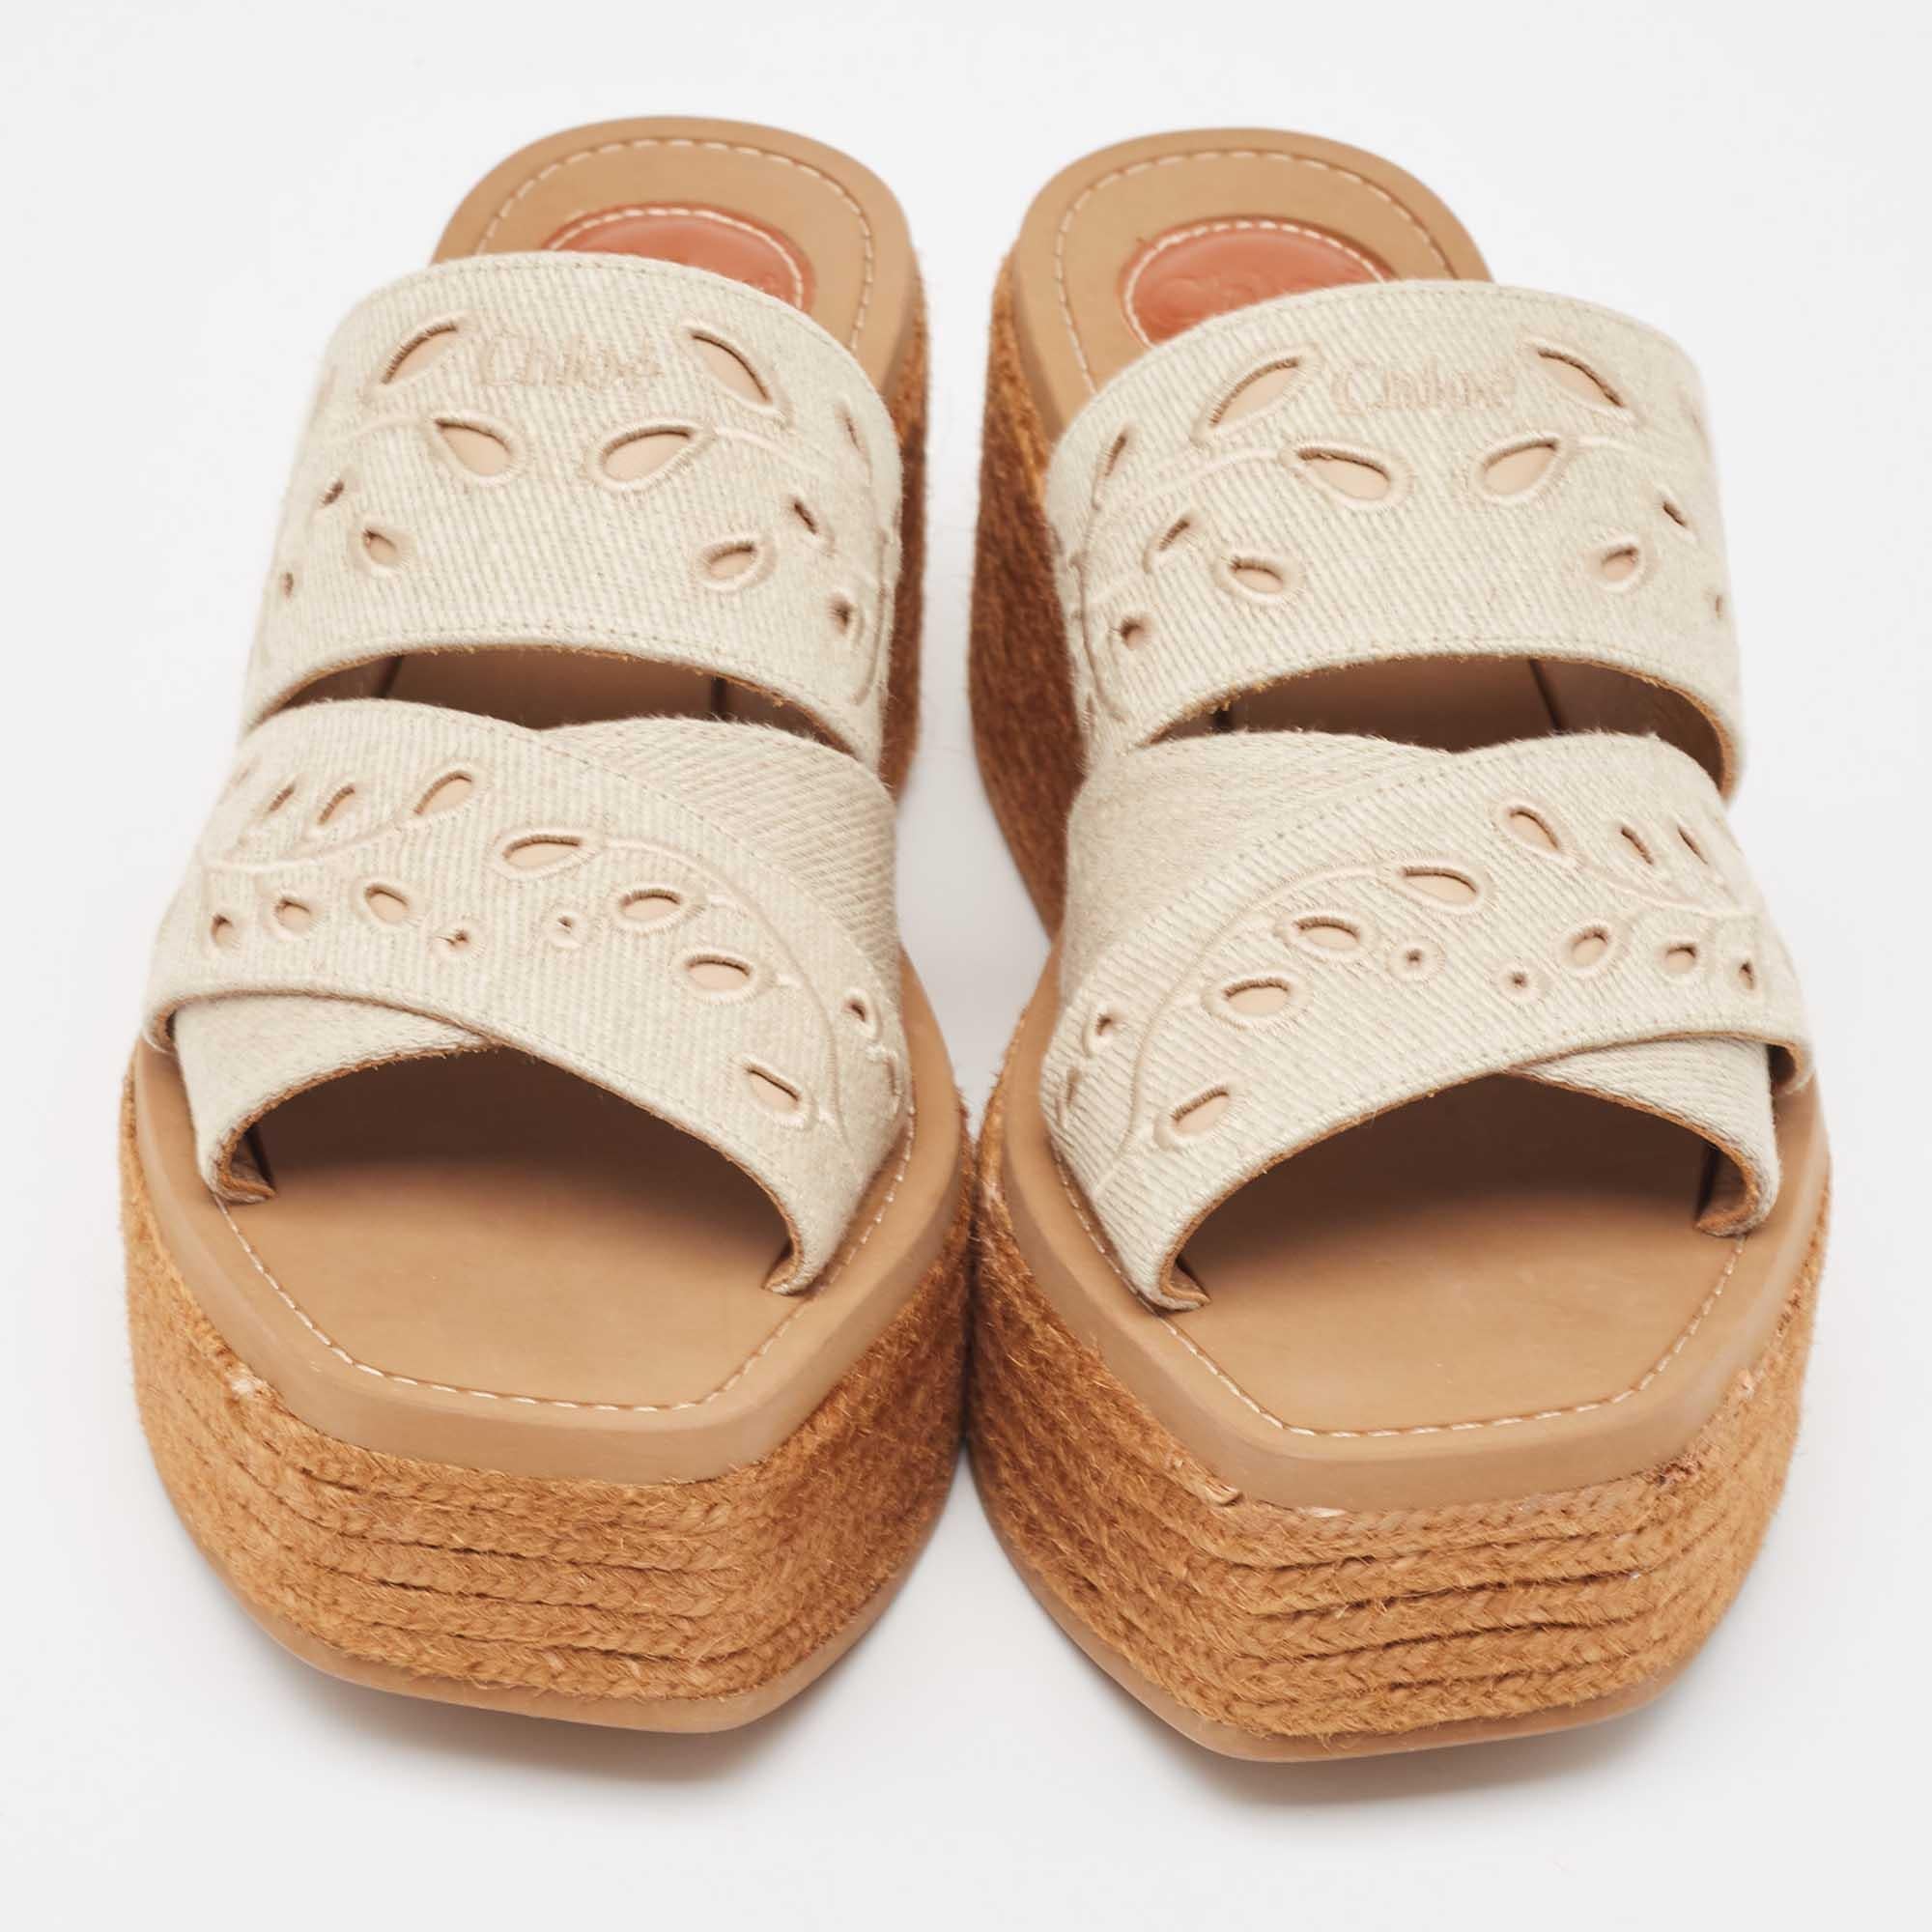 Diese Chloe-Sandalen sind schick und mit Sorgfalt für eine gute Passform gefertigt. Sie sind aus hochwertigen MATERIALEN gefertigt, langlebig, einfach zu stylen und fabelhaft, mit bequemer Innenausstattung, kunstvollem Design und schönem